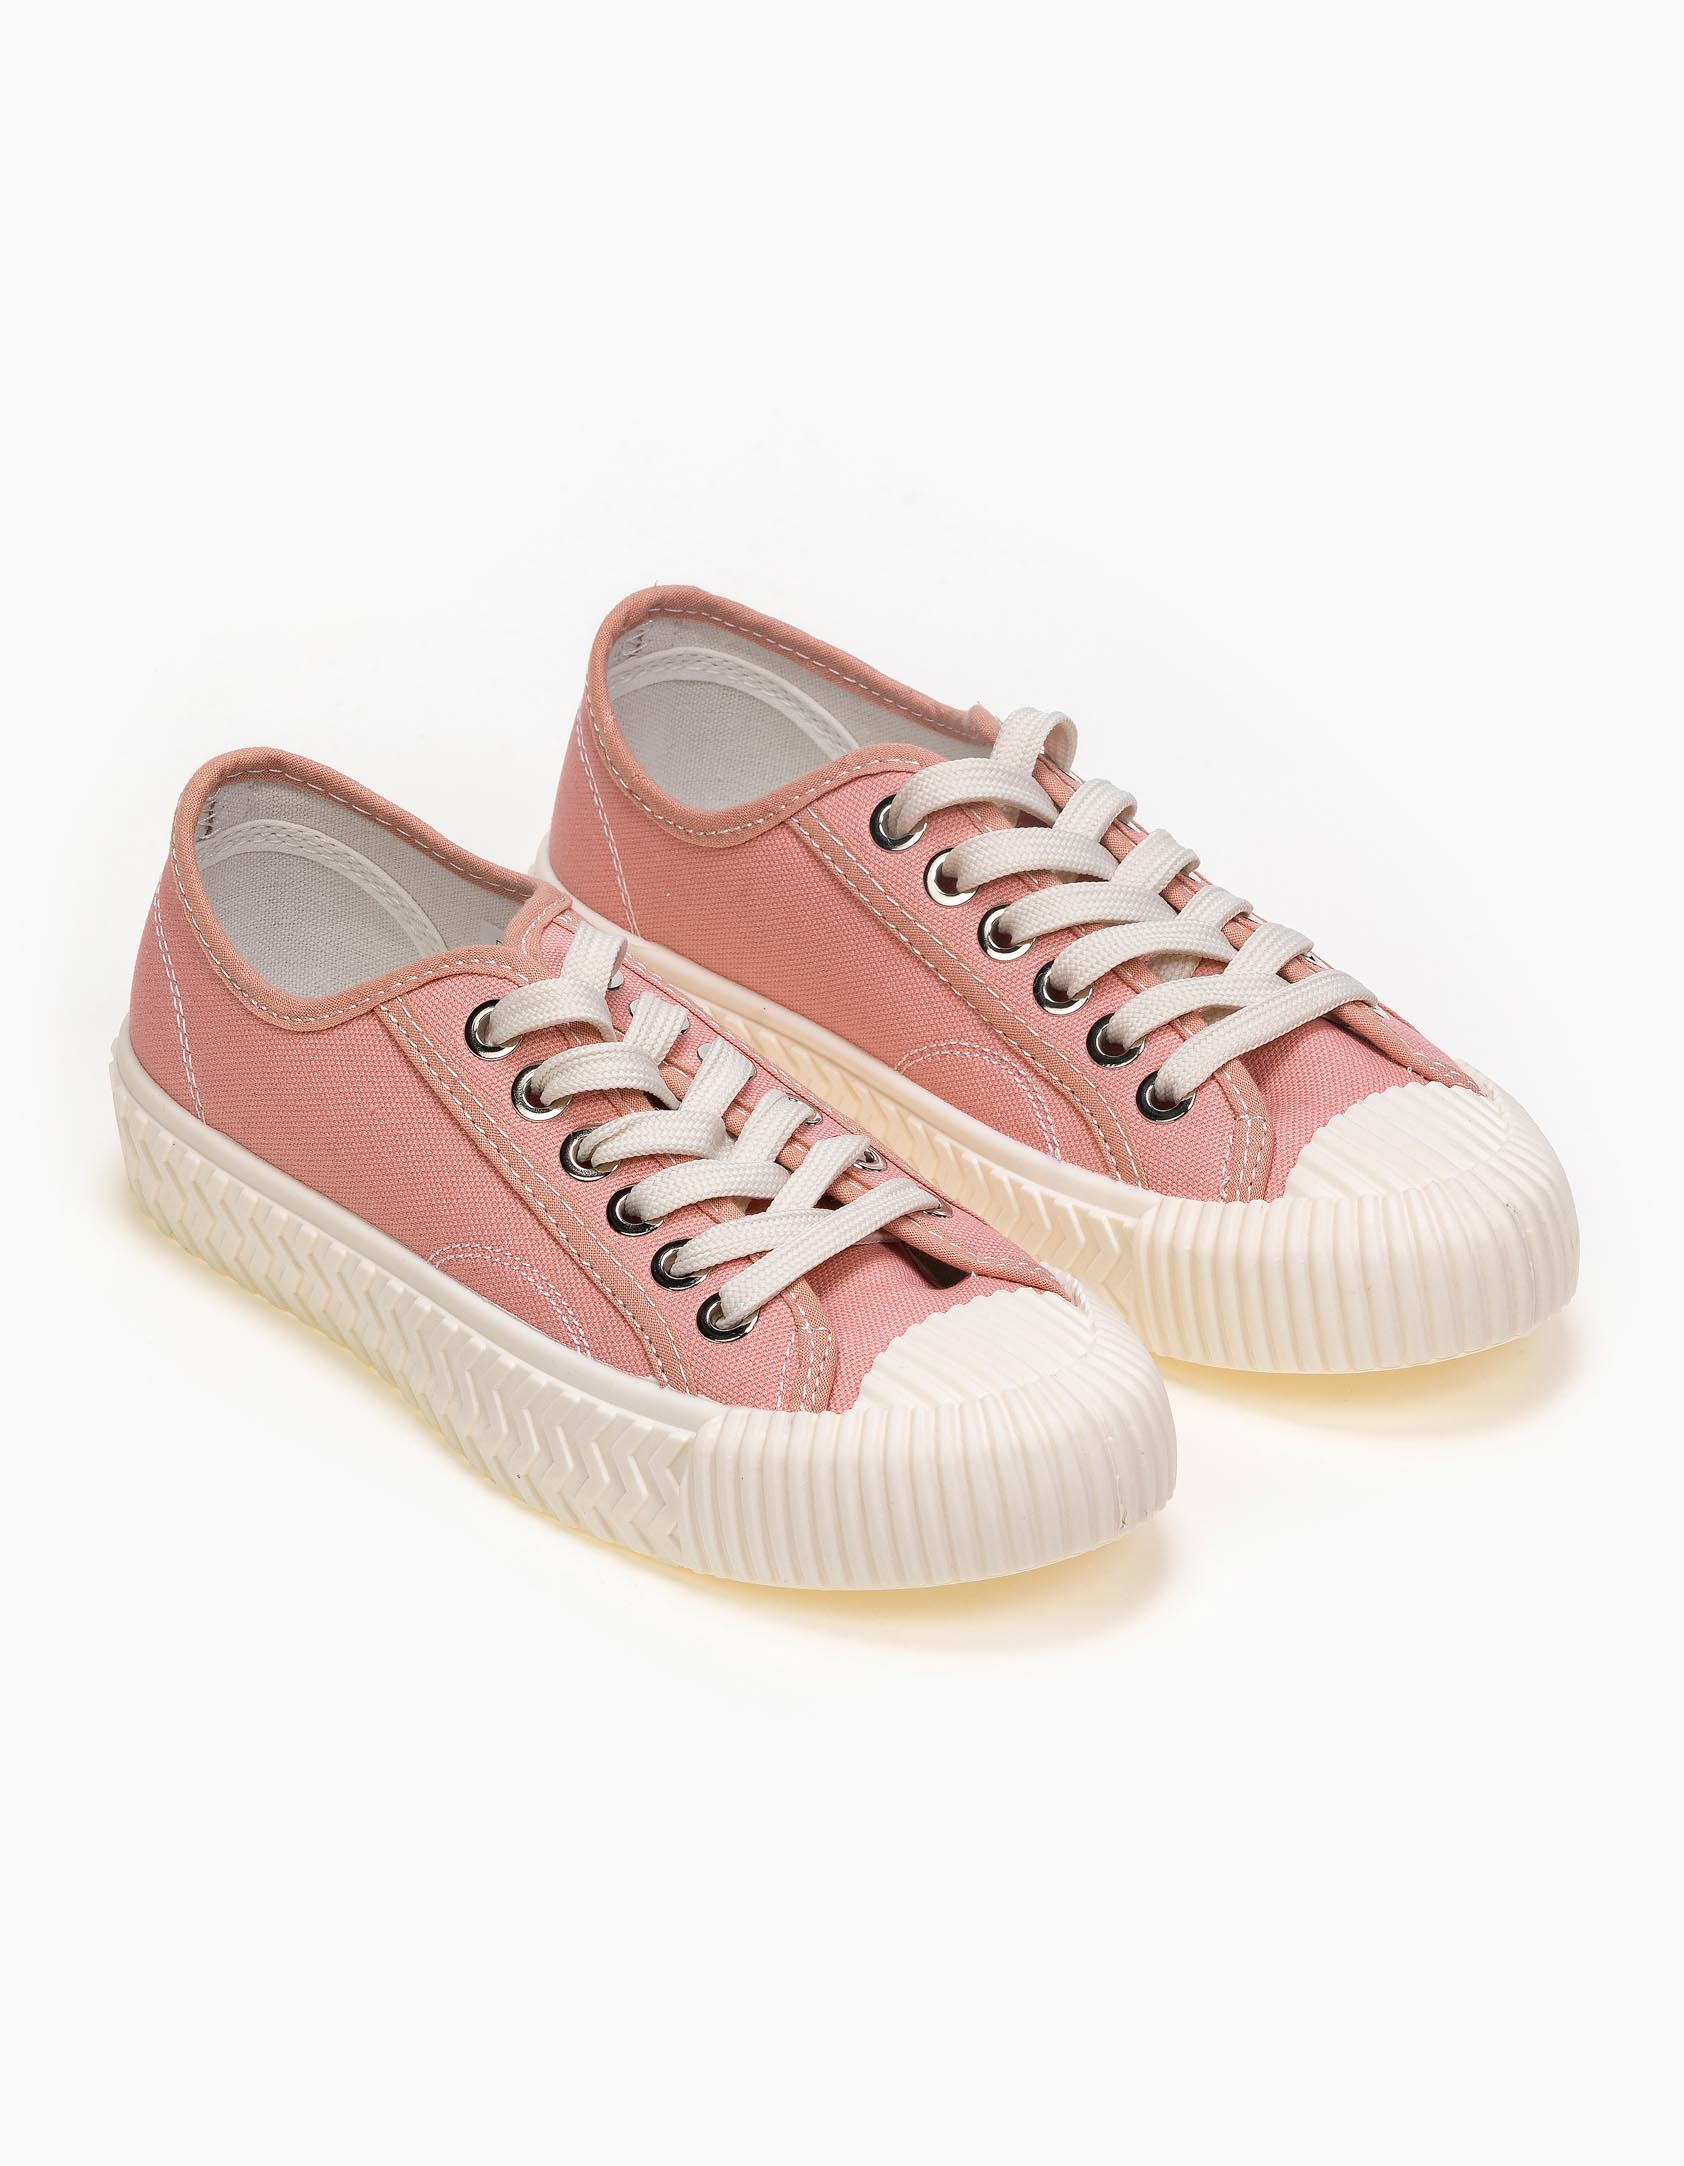 Sneakers με ιδιαίτερο πάτο - Ροζ Παπούτσια > Sneakers